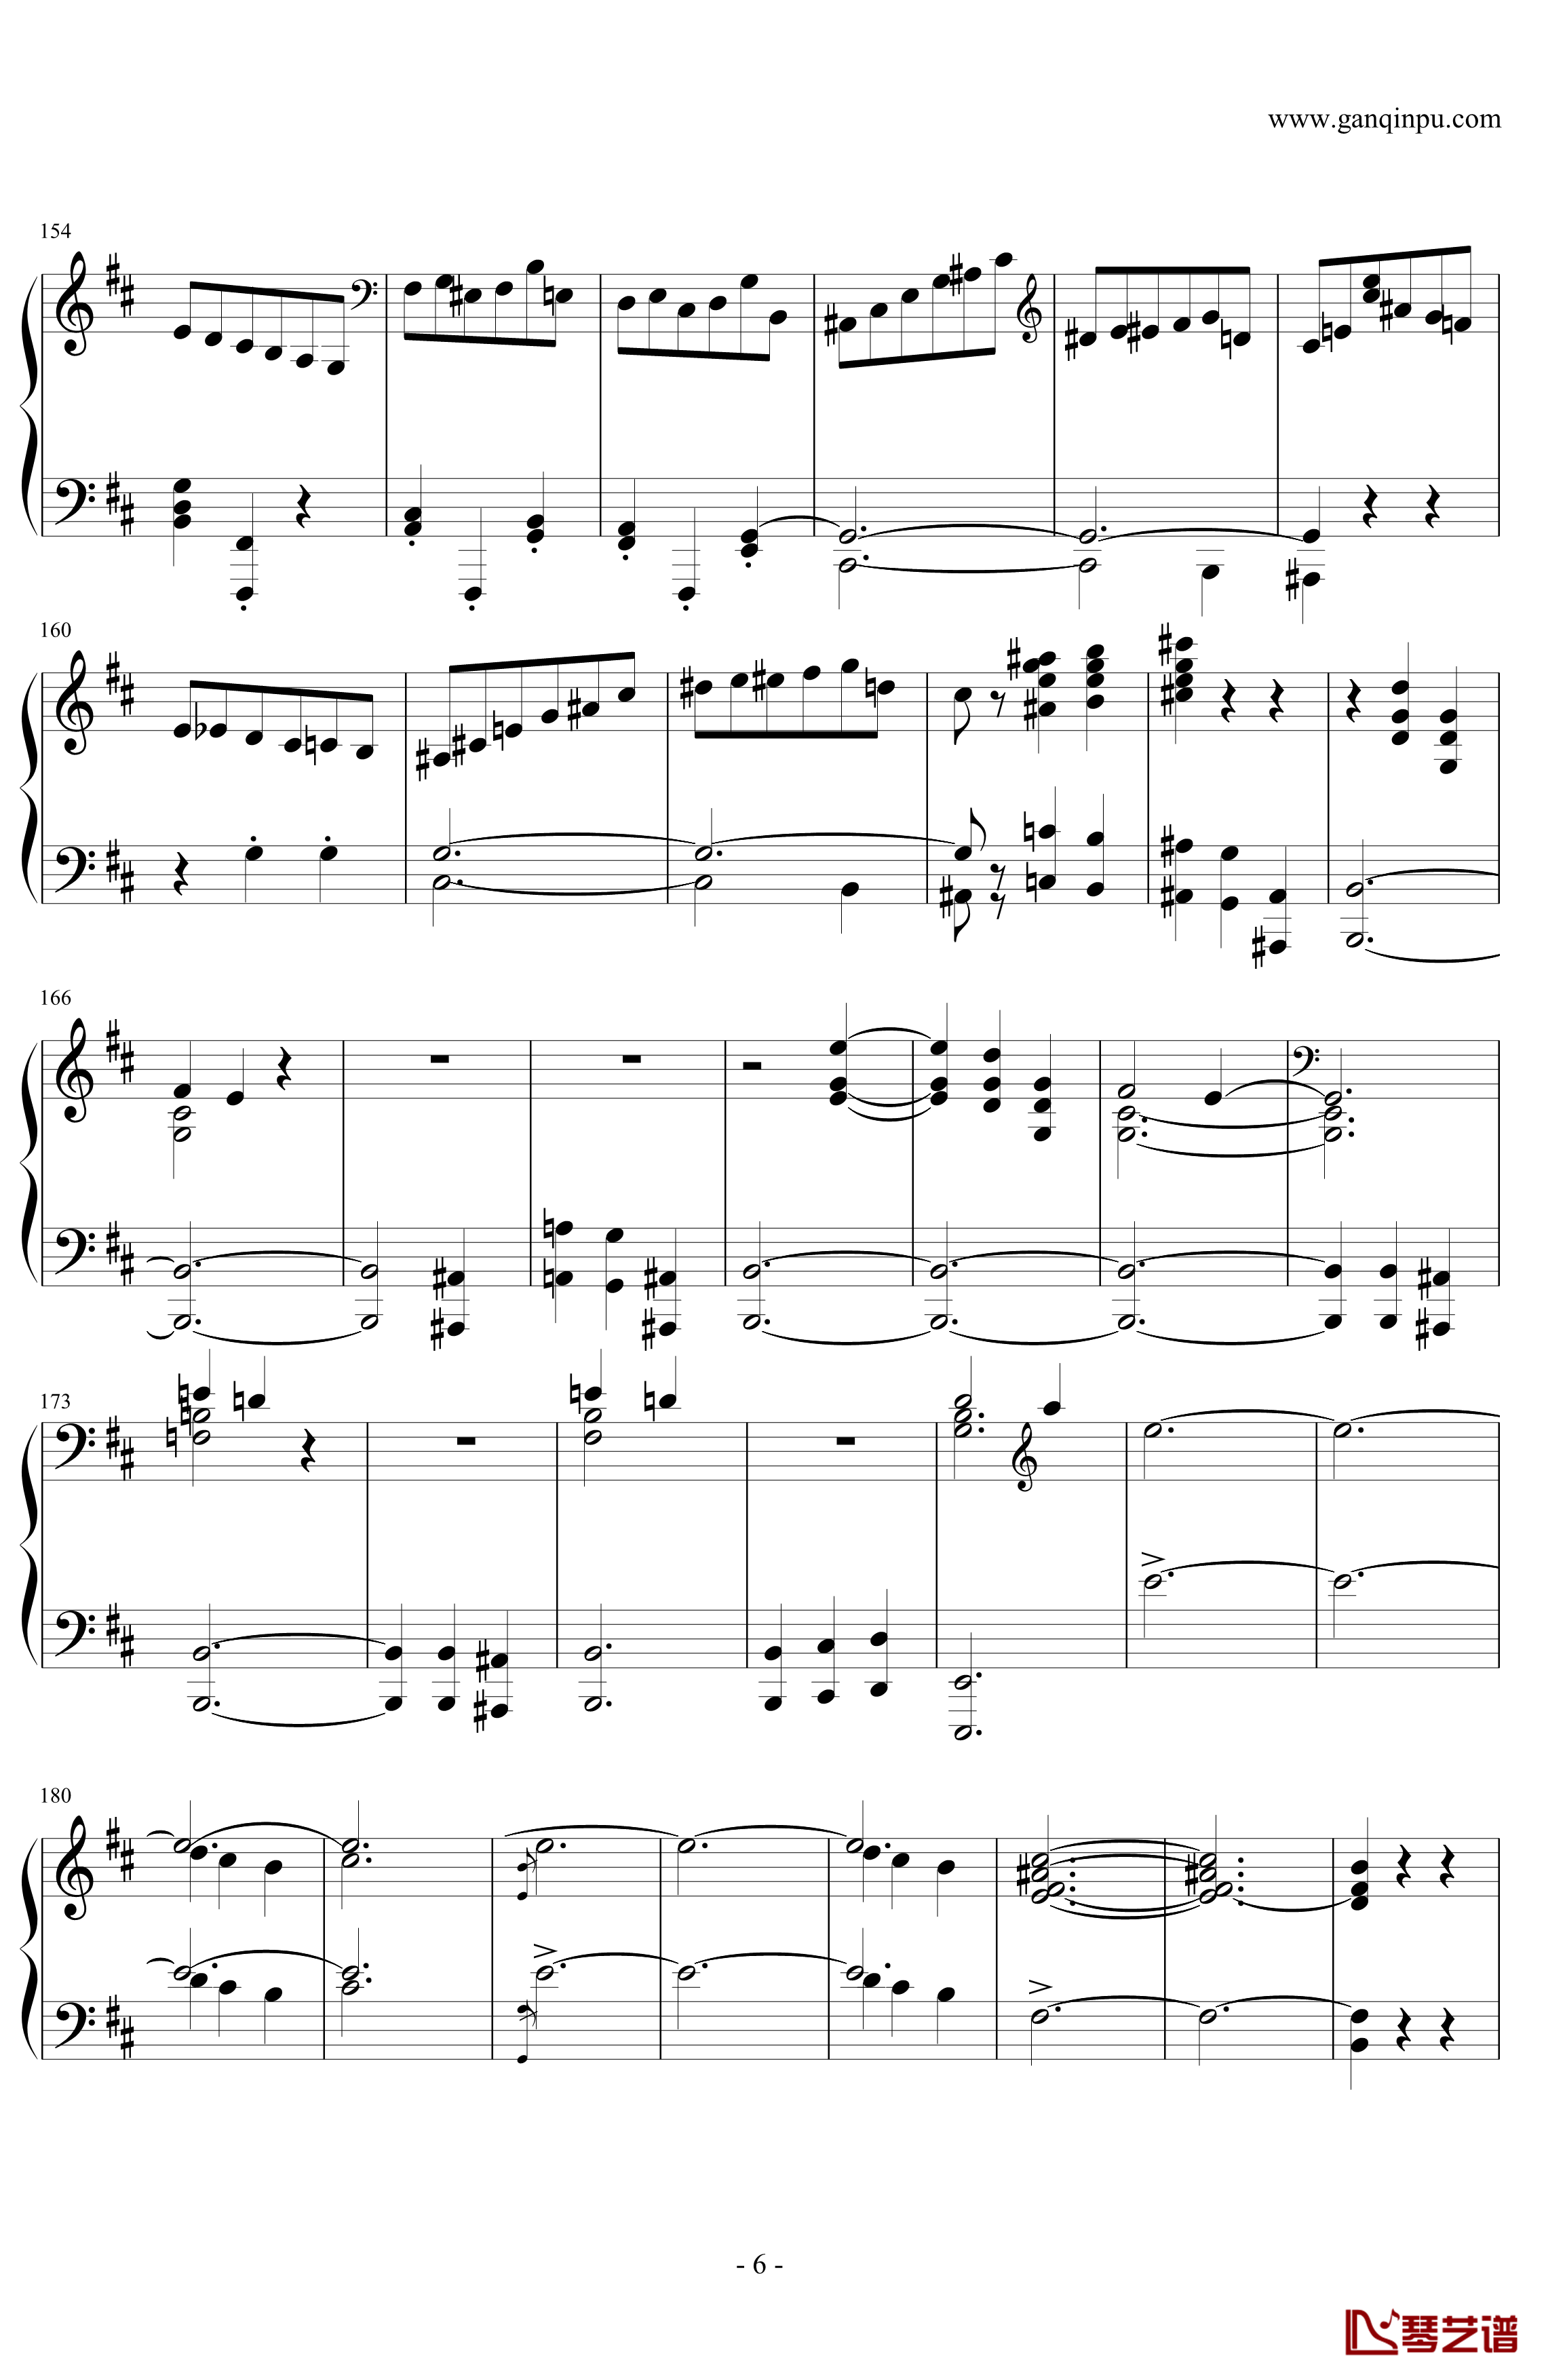 肖邦第一谐谑曲钢琴谱-肖邦-chopin6